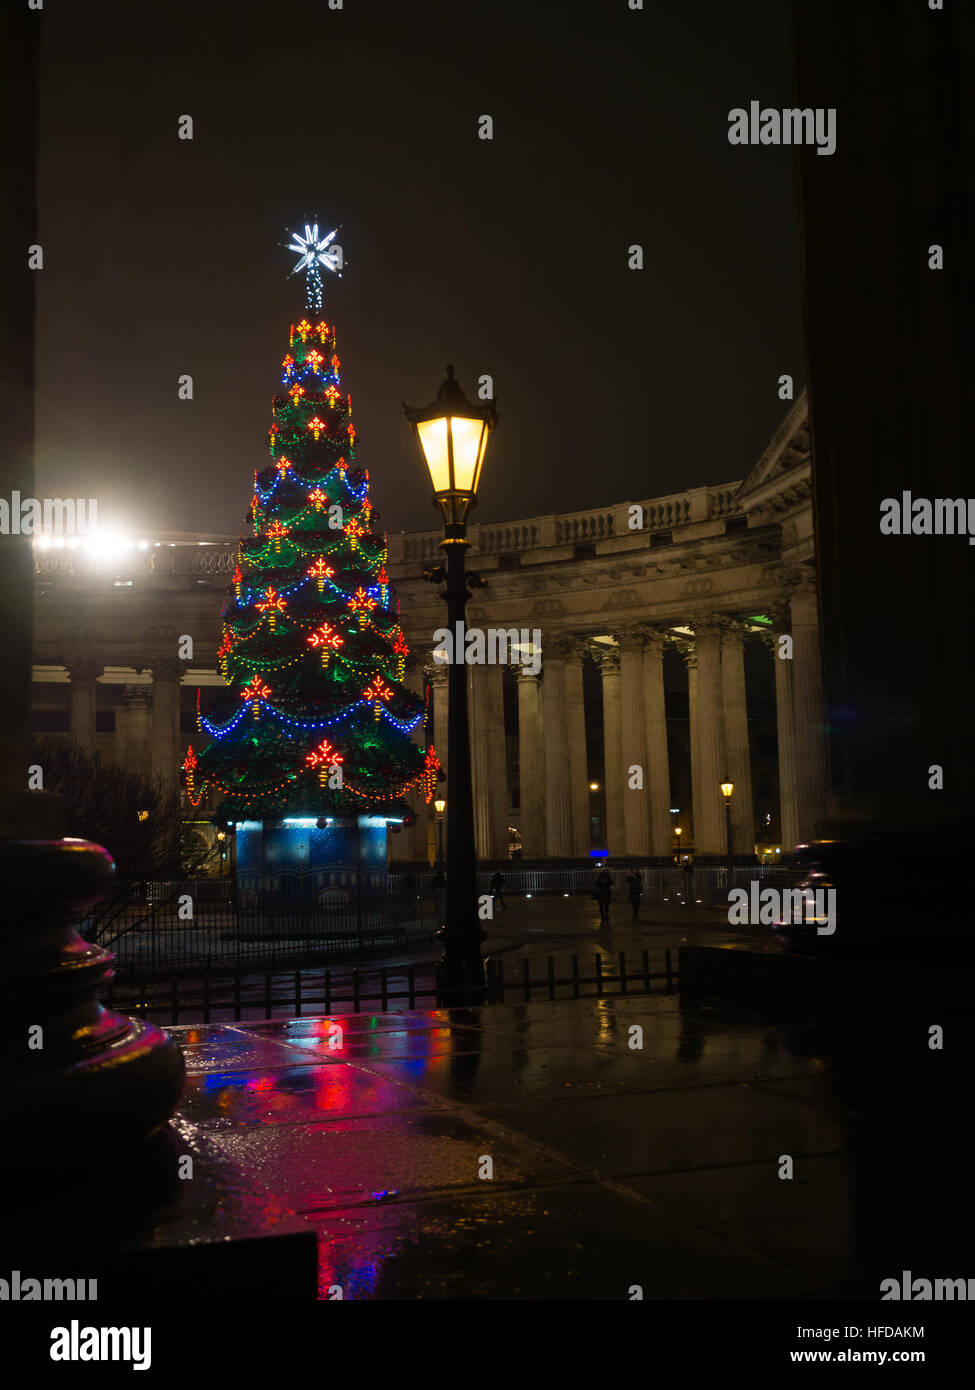 San Petersburgo, Rusia - Diciembre 22, 2016: árbol de navidad de la ciudad decoradas con una decoración colorida, cerca de la Catedral de Kazan en la noche illuminatio Foto de stock